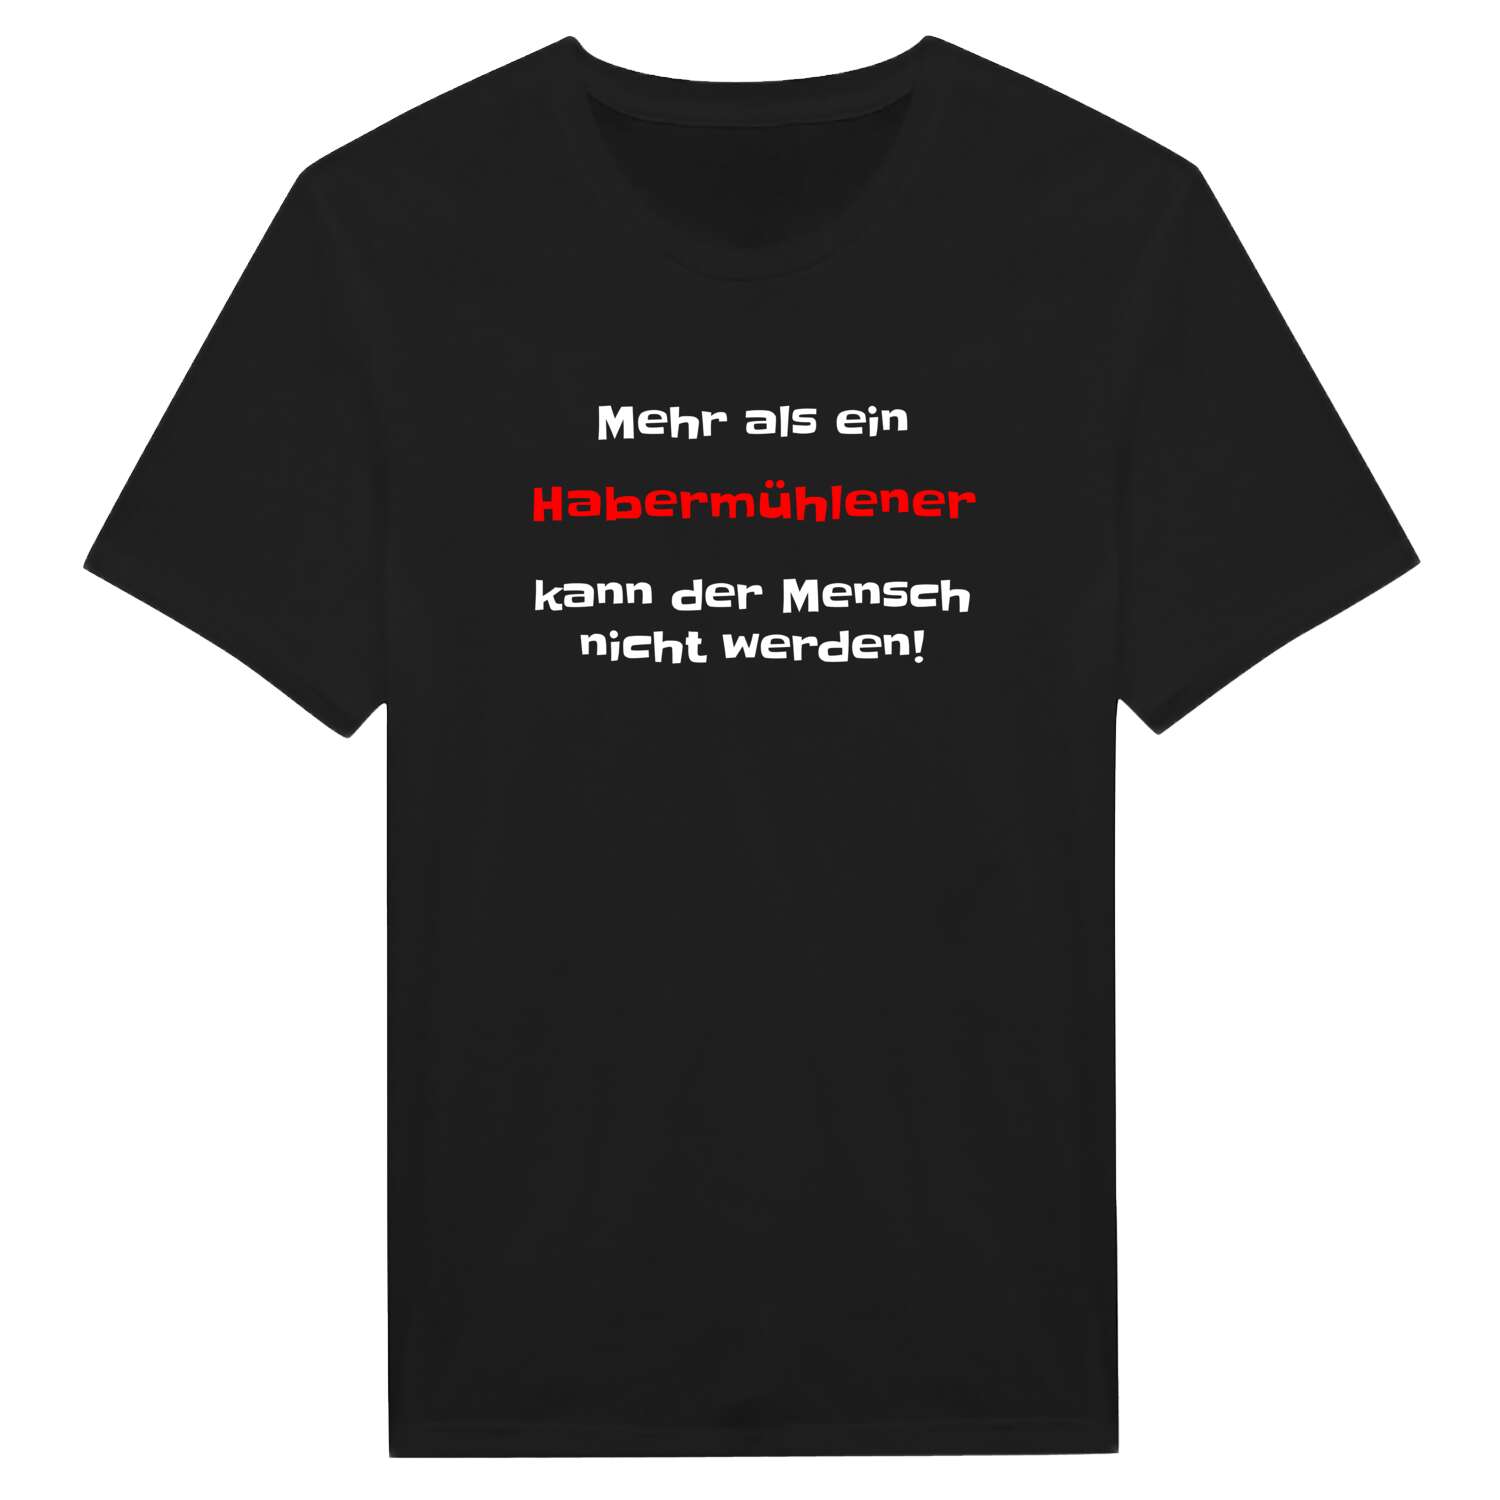 Habermühle T-Shirt »Mehr als ein«